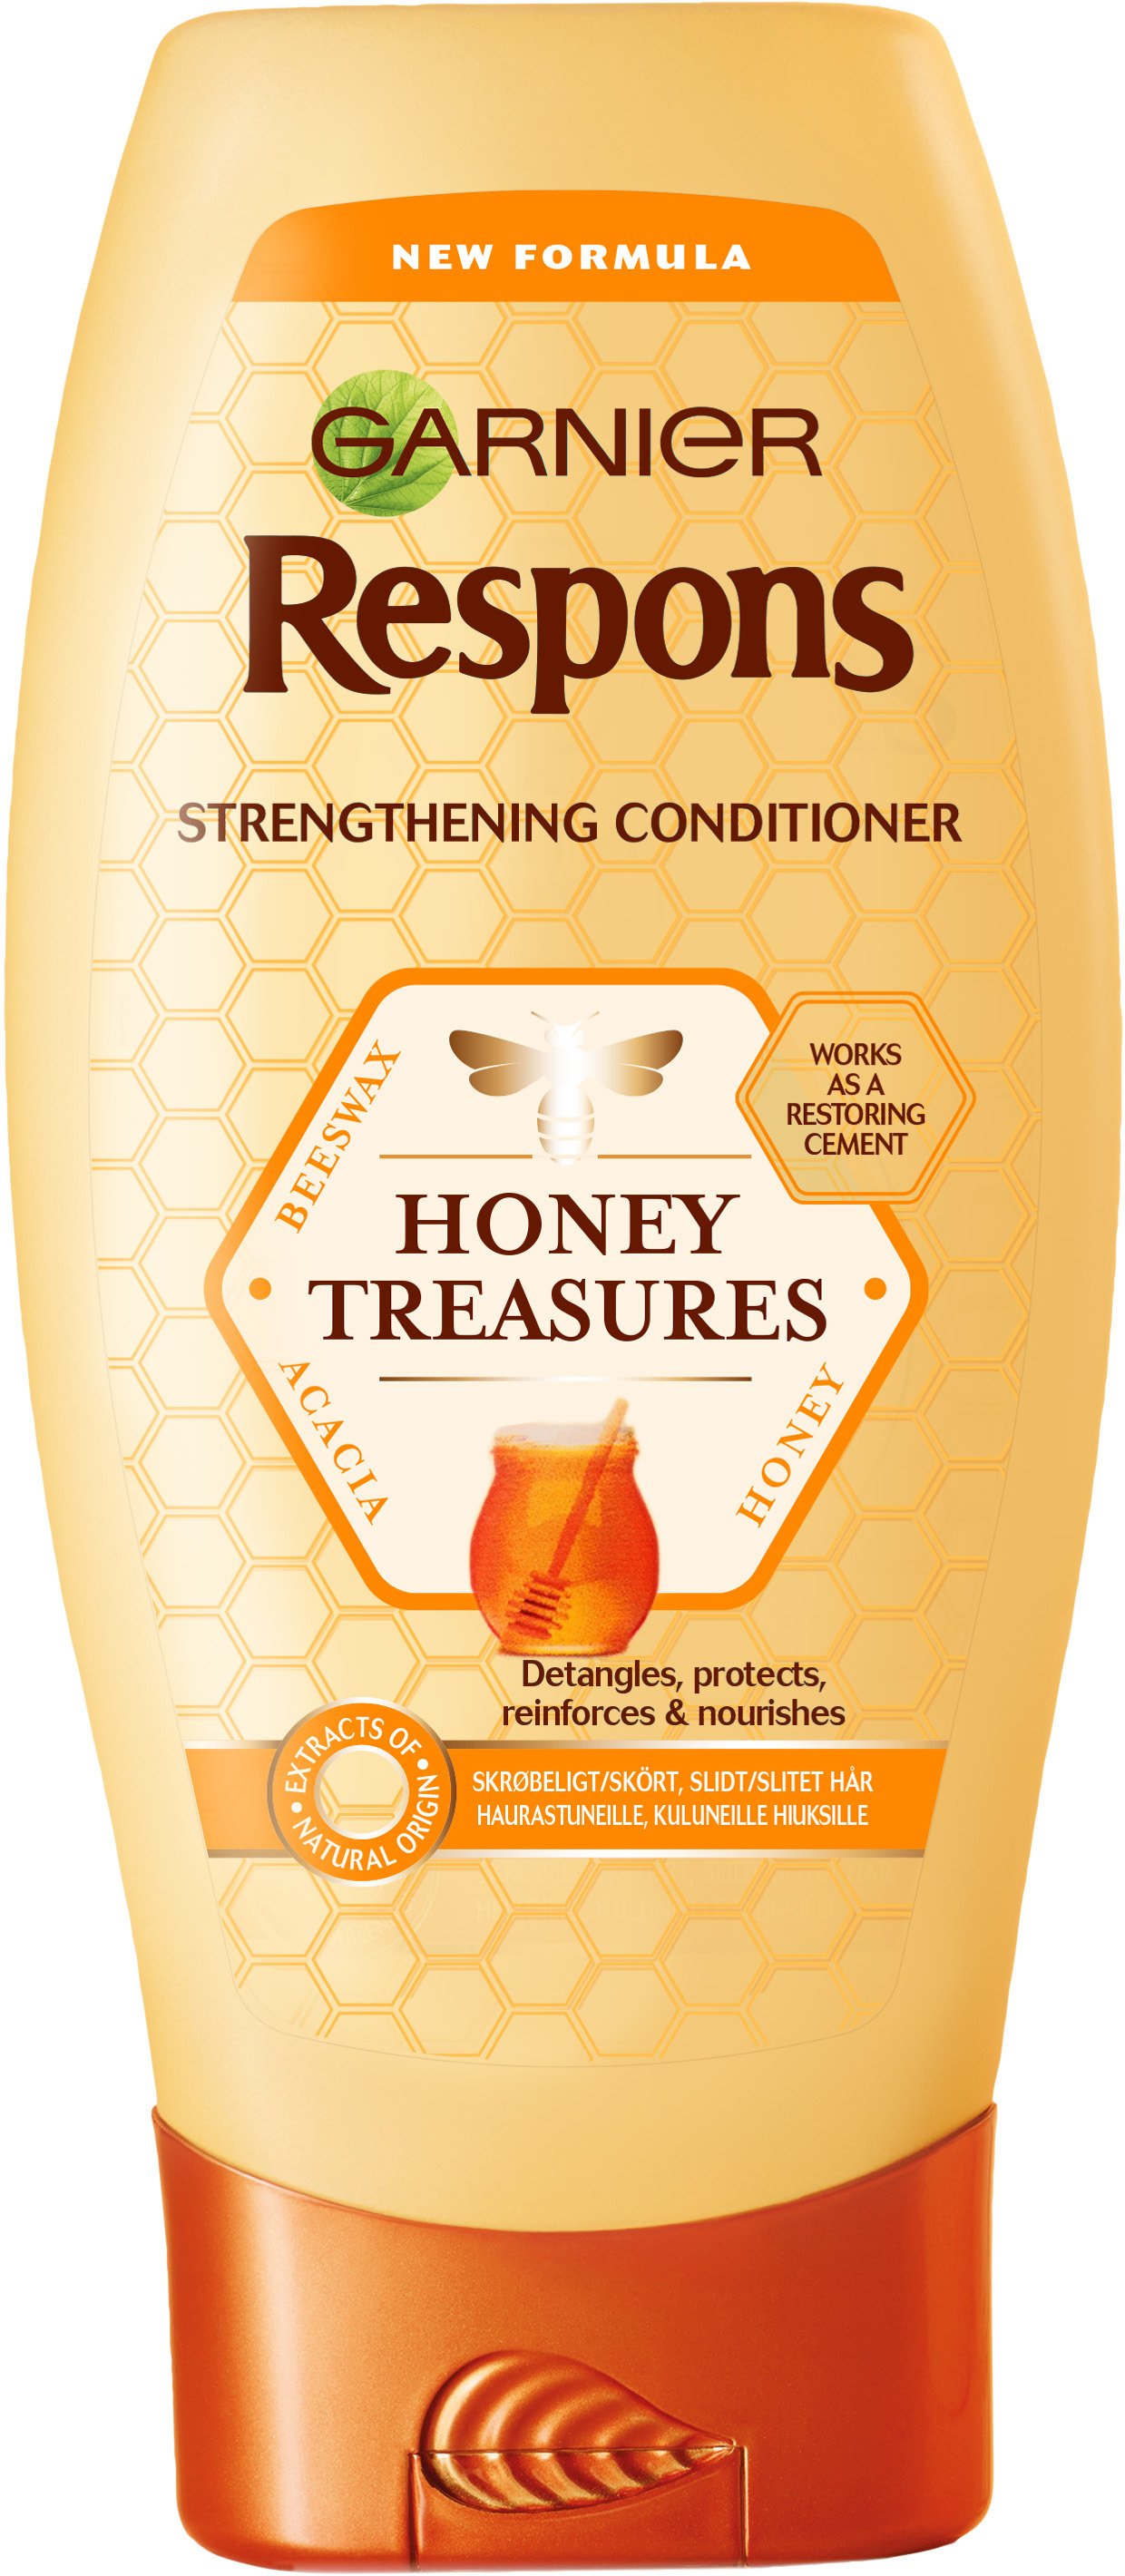 Garnier Respons Honey Treasures Strenghtening Conditioner 200 ml